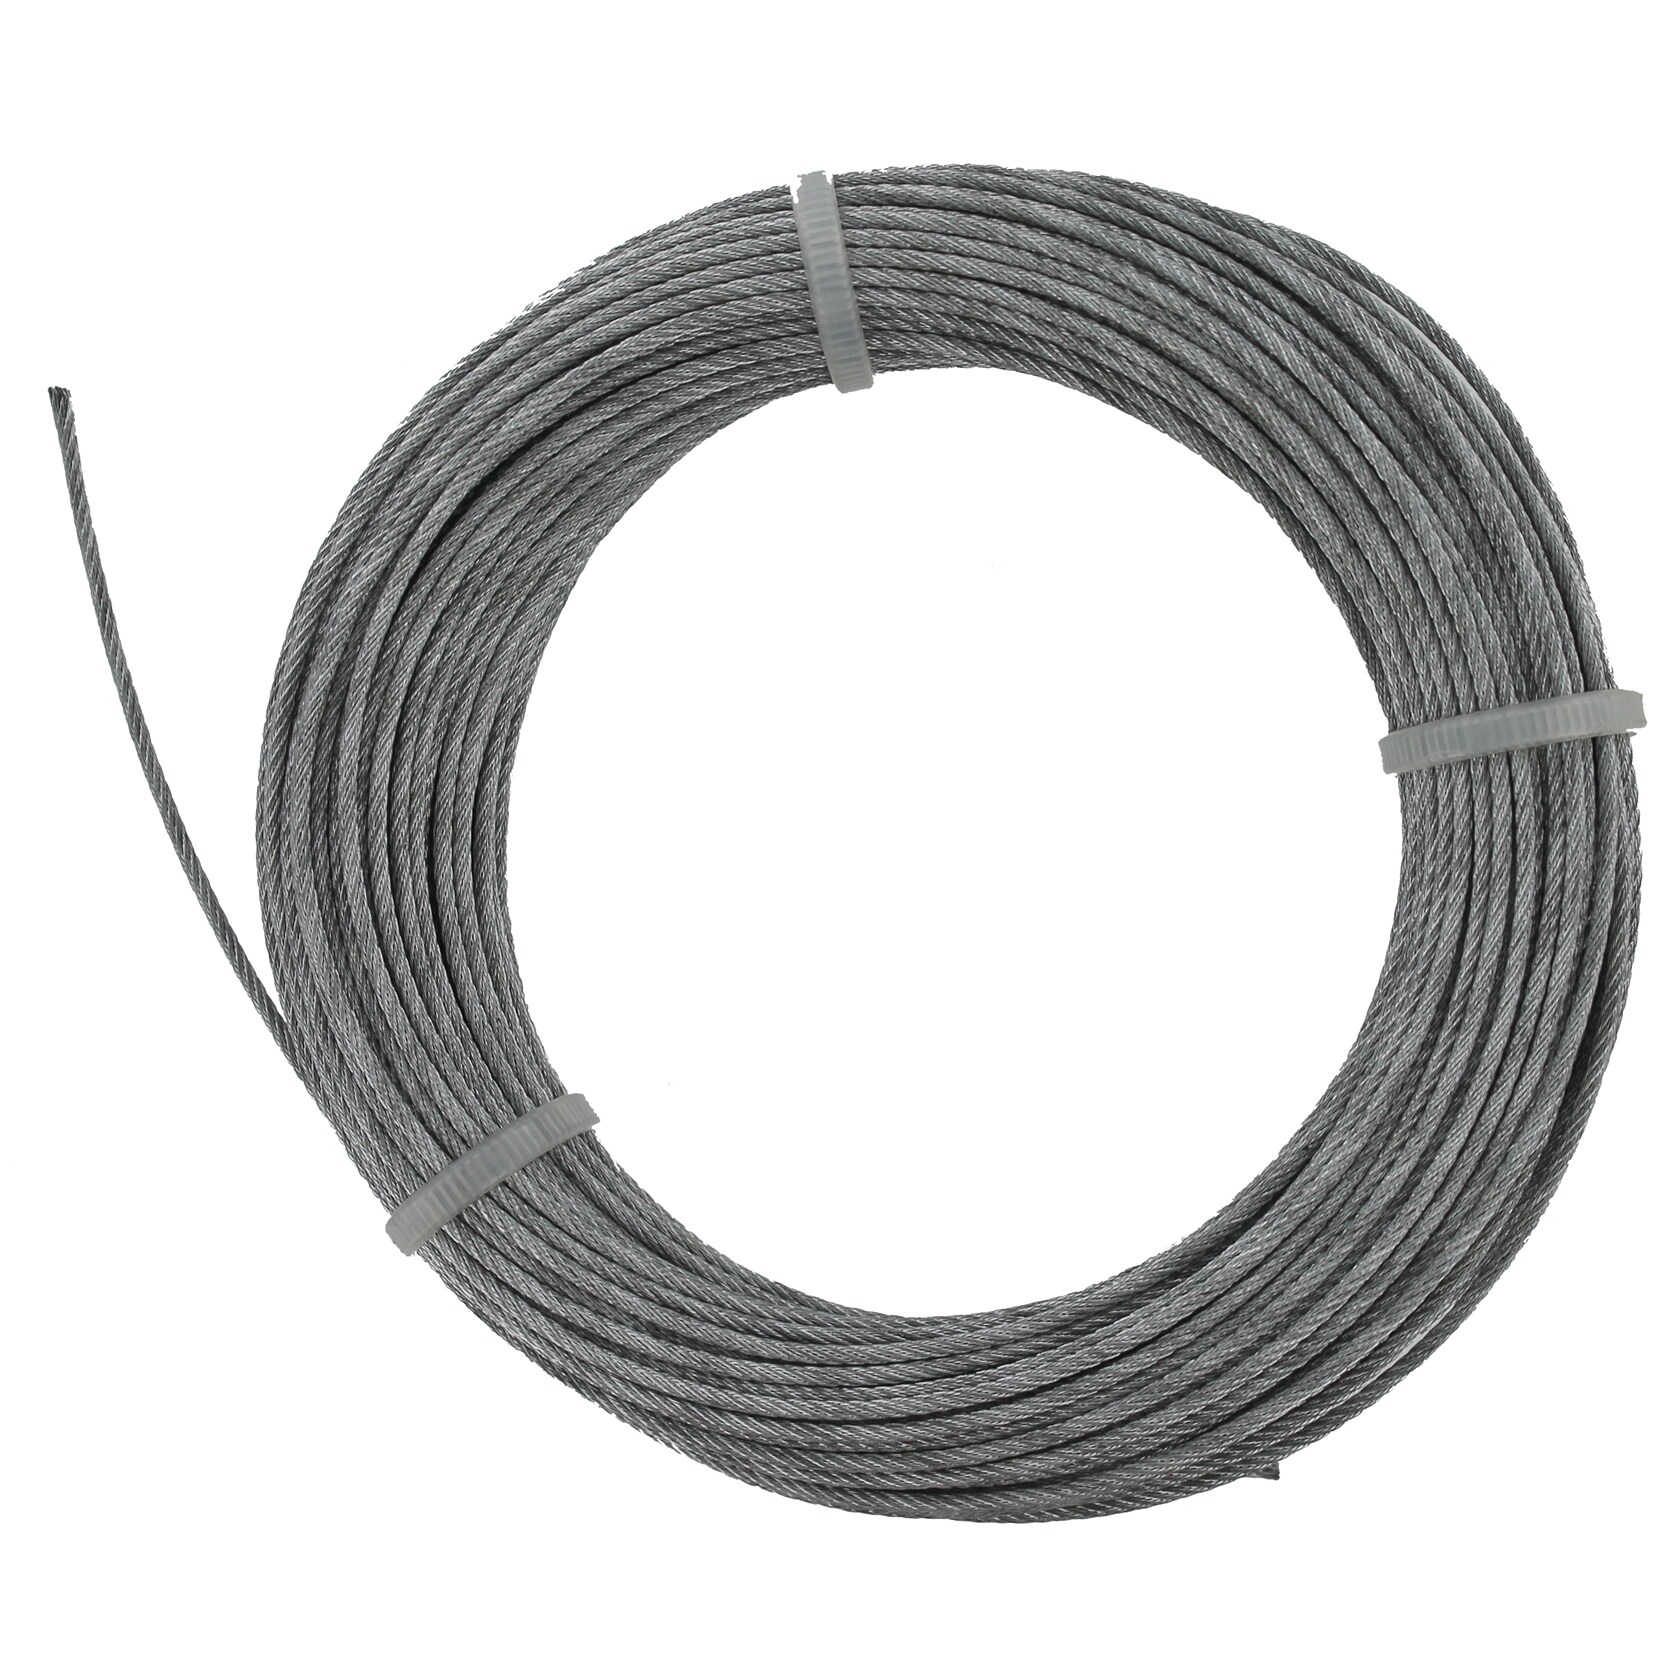 Cable Galv Precut 7x7 1//8 100